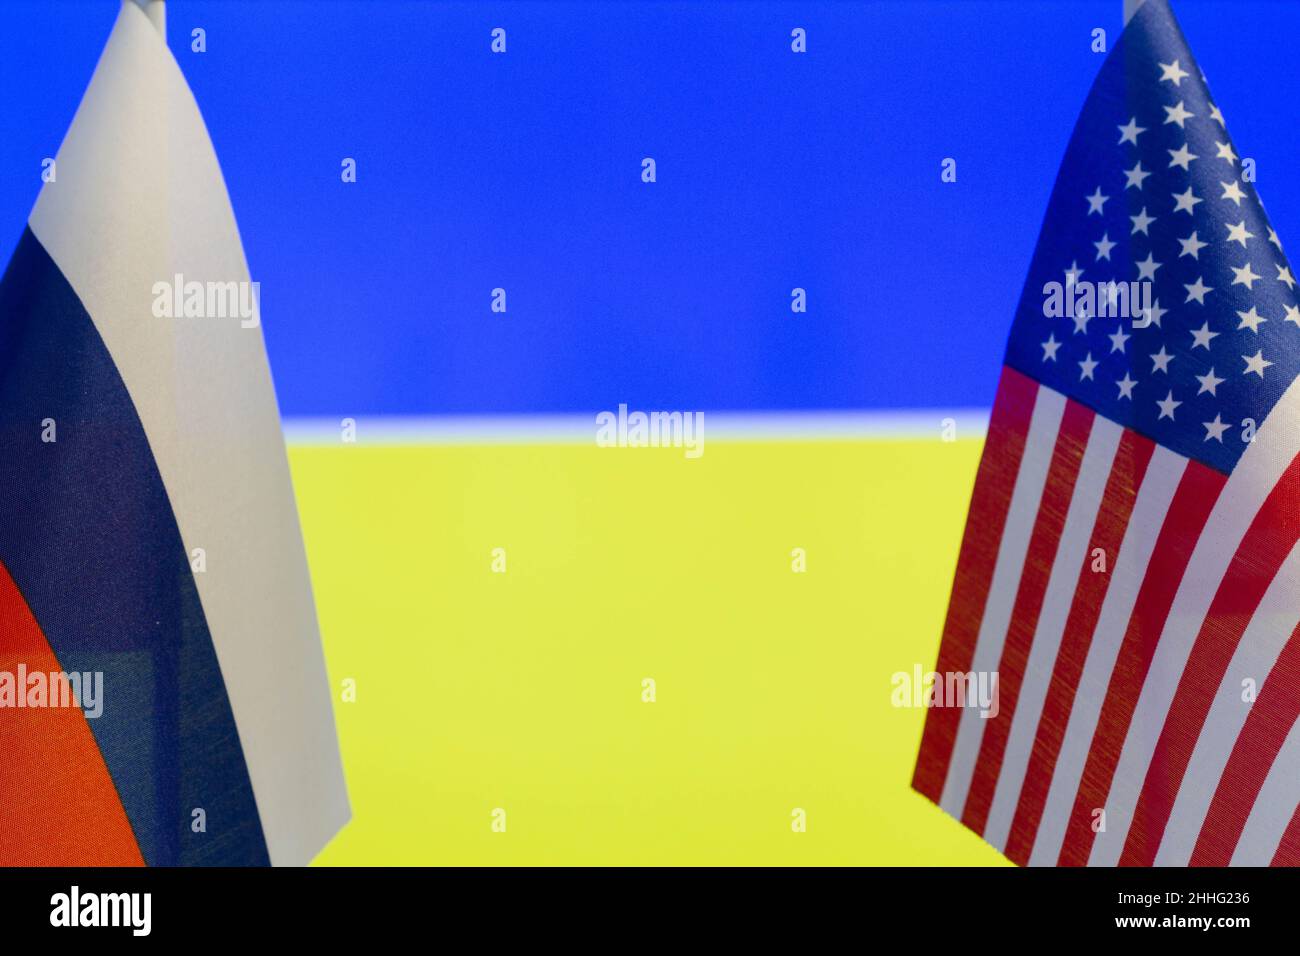 Die US-Flagge und die russische Flagge auf dem Hintergrund der Ukraine-Flagge. Flagge der USA, Russlands und der Ukraine. Die Vereinigten Staaten von Amerika und die russische Fede Stockfoto